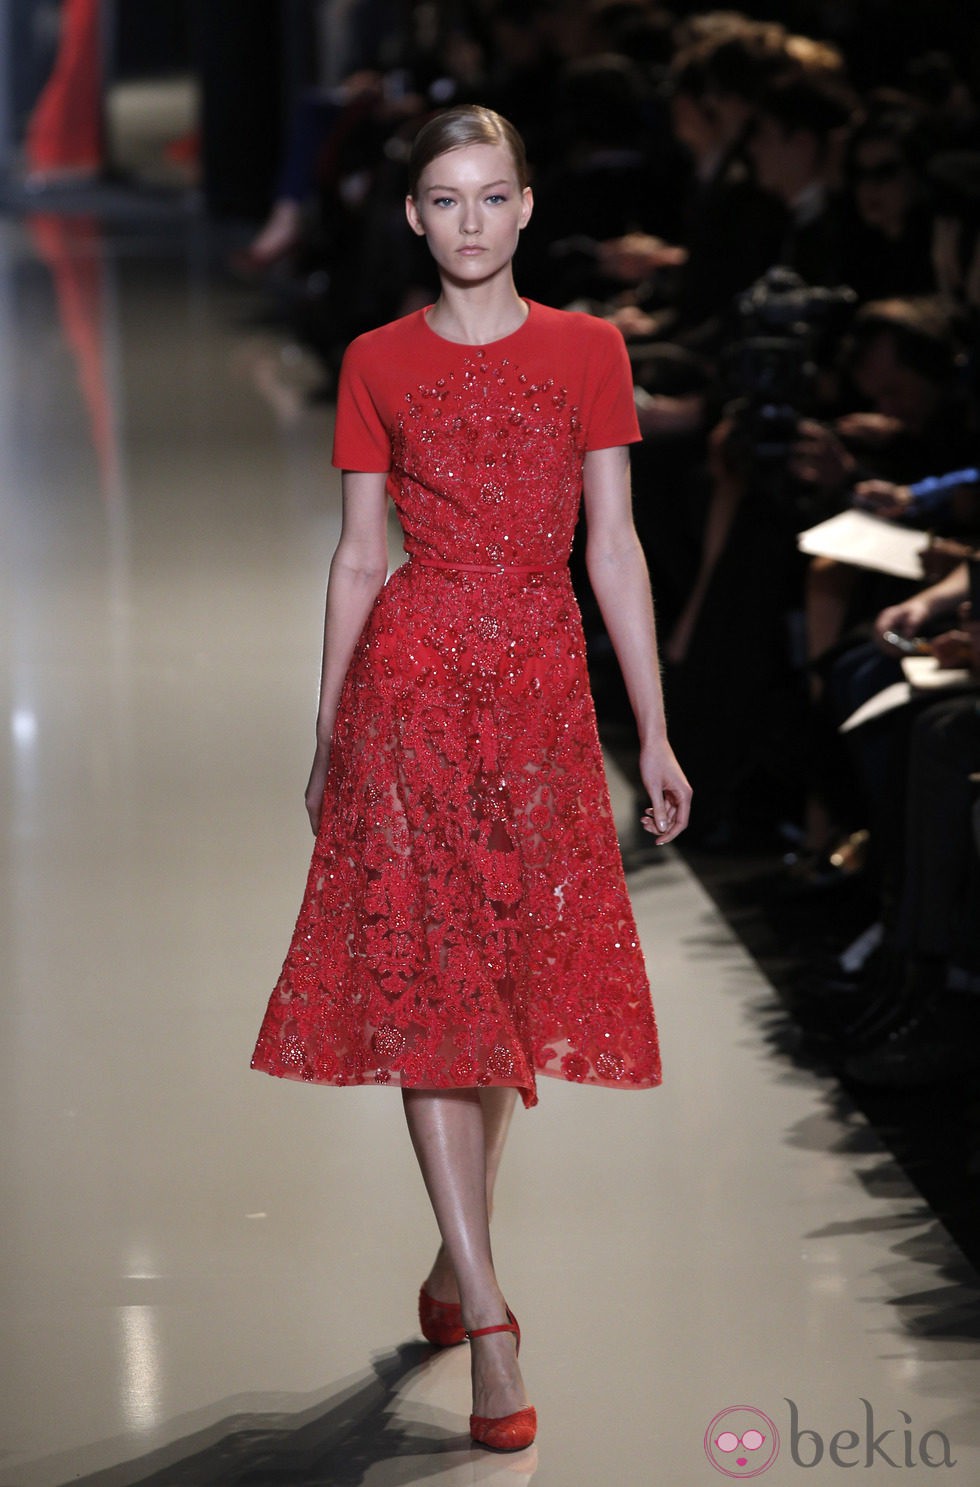 Vestido rojo con pedrería de la colección primavera/verano 2013 de Elie Saab de la Semana de la Alta Costura de París